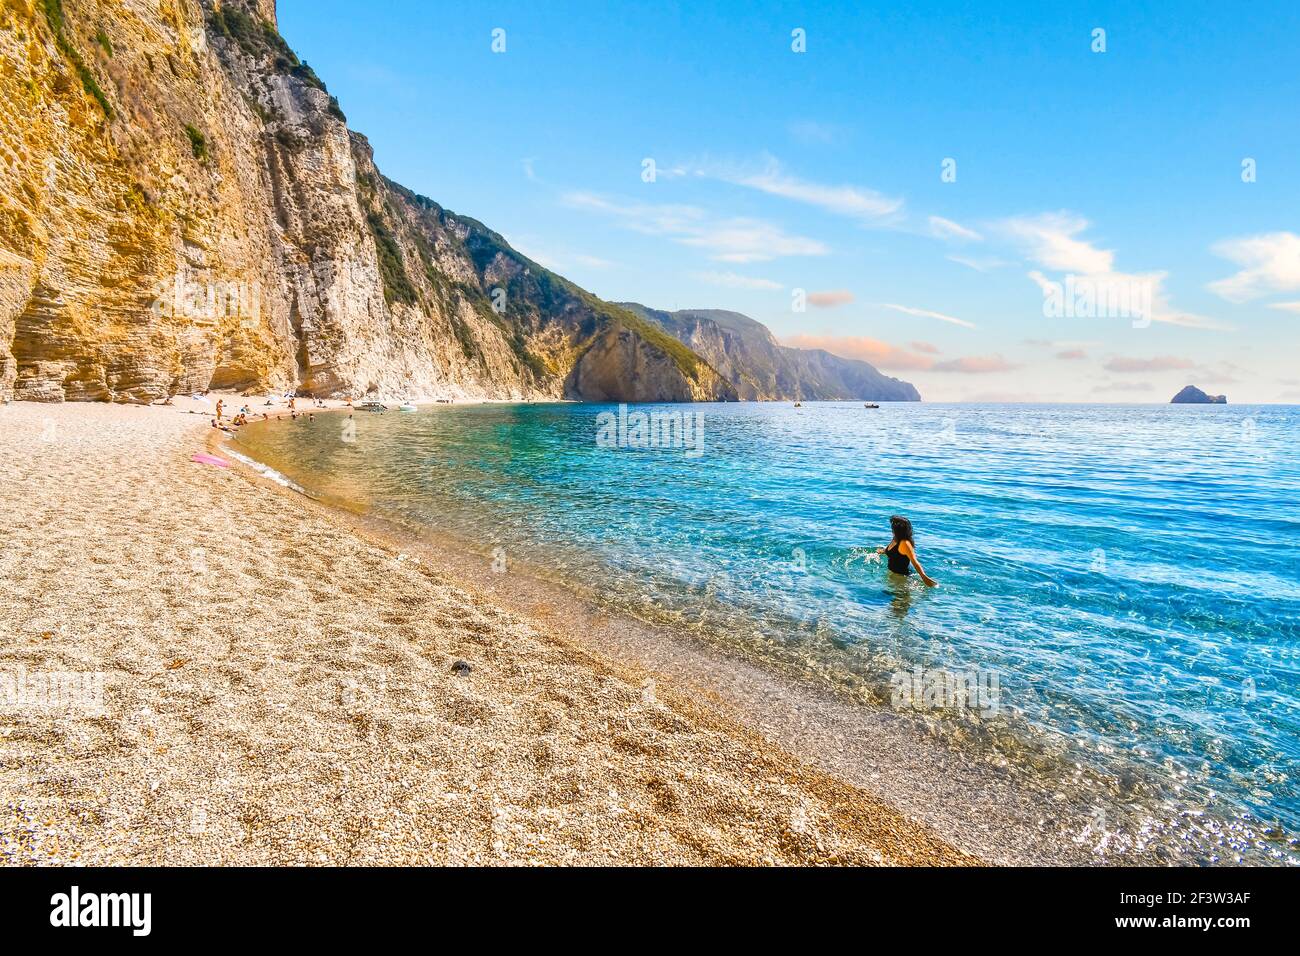 Eine Frau wagt im türkisblauen grünen Meer vor dem abgeschiedenen Paradies, oder Chomi Beach auf der Insel Korfu, Griechenland. Stockfoto